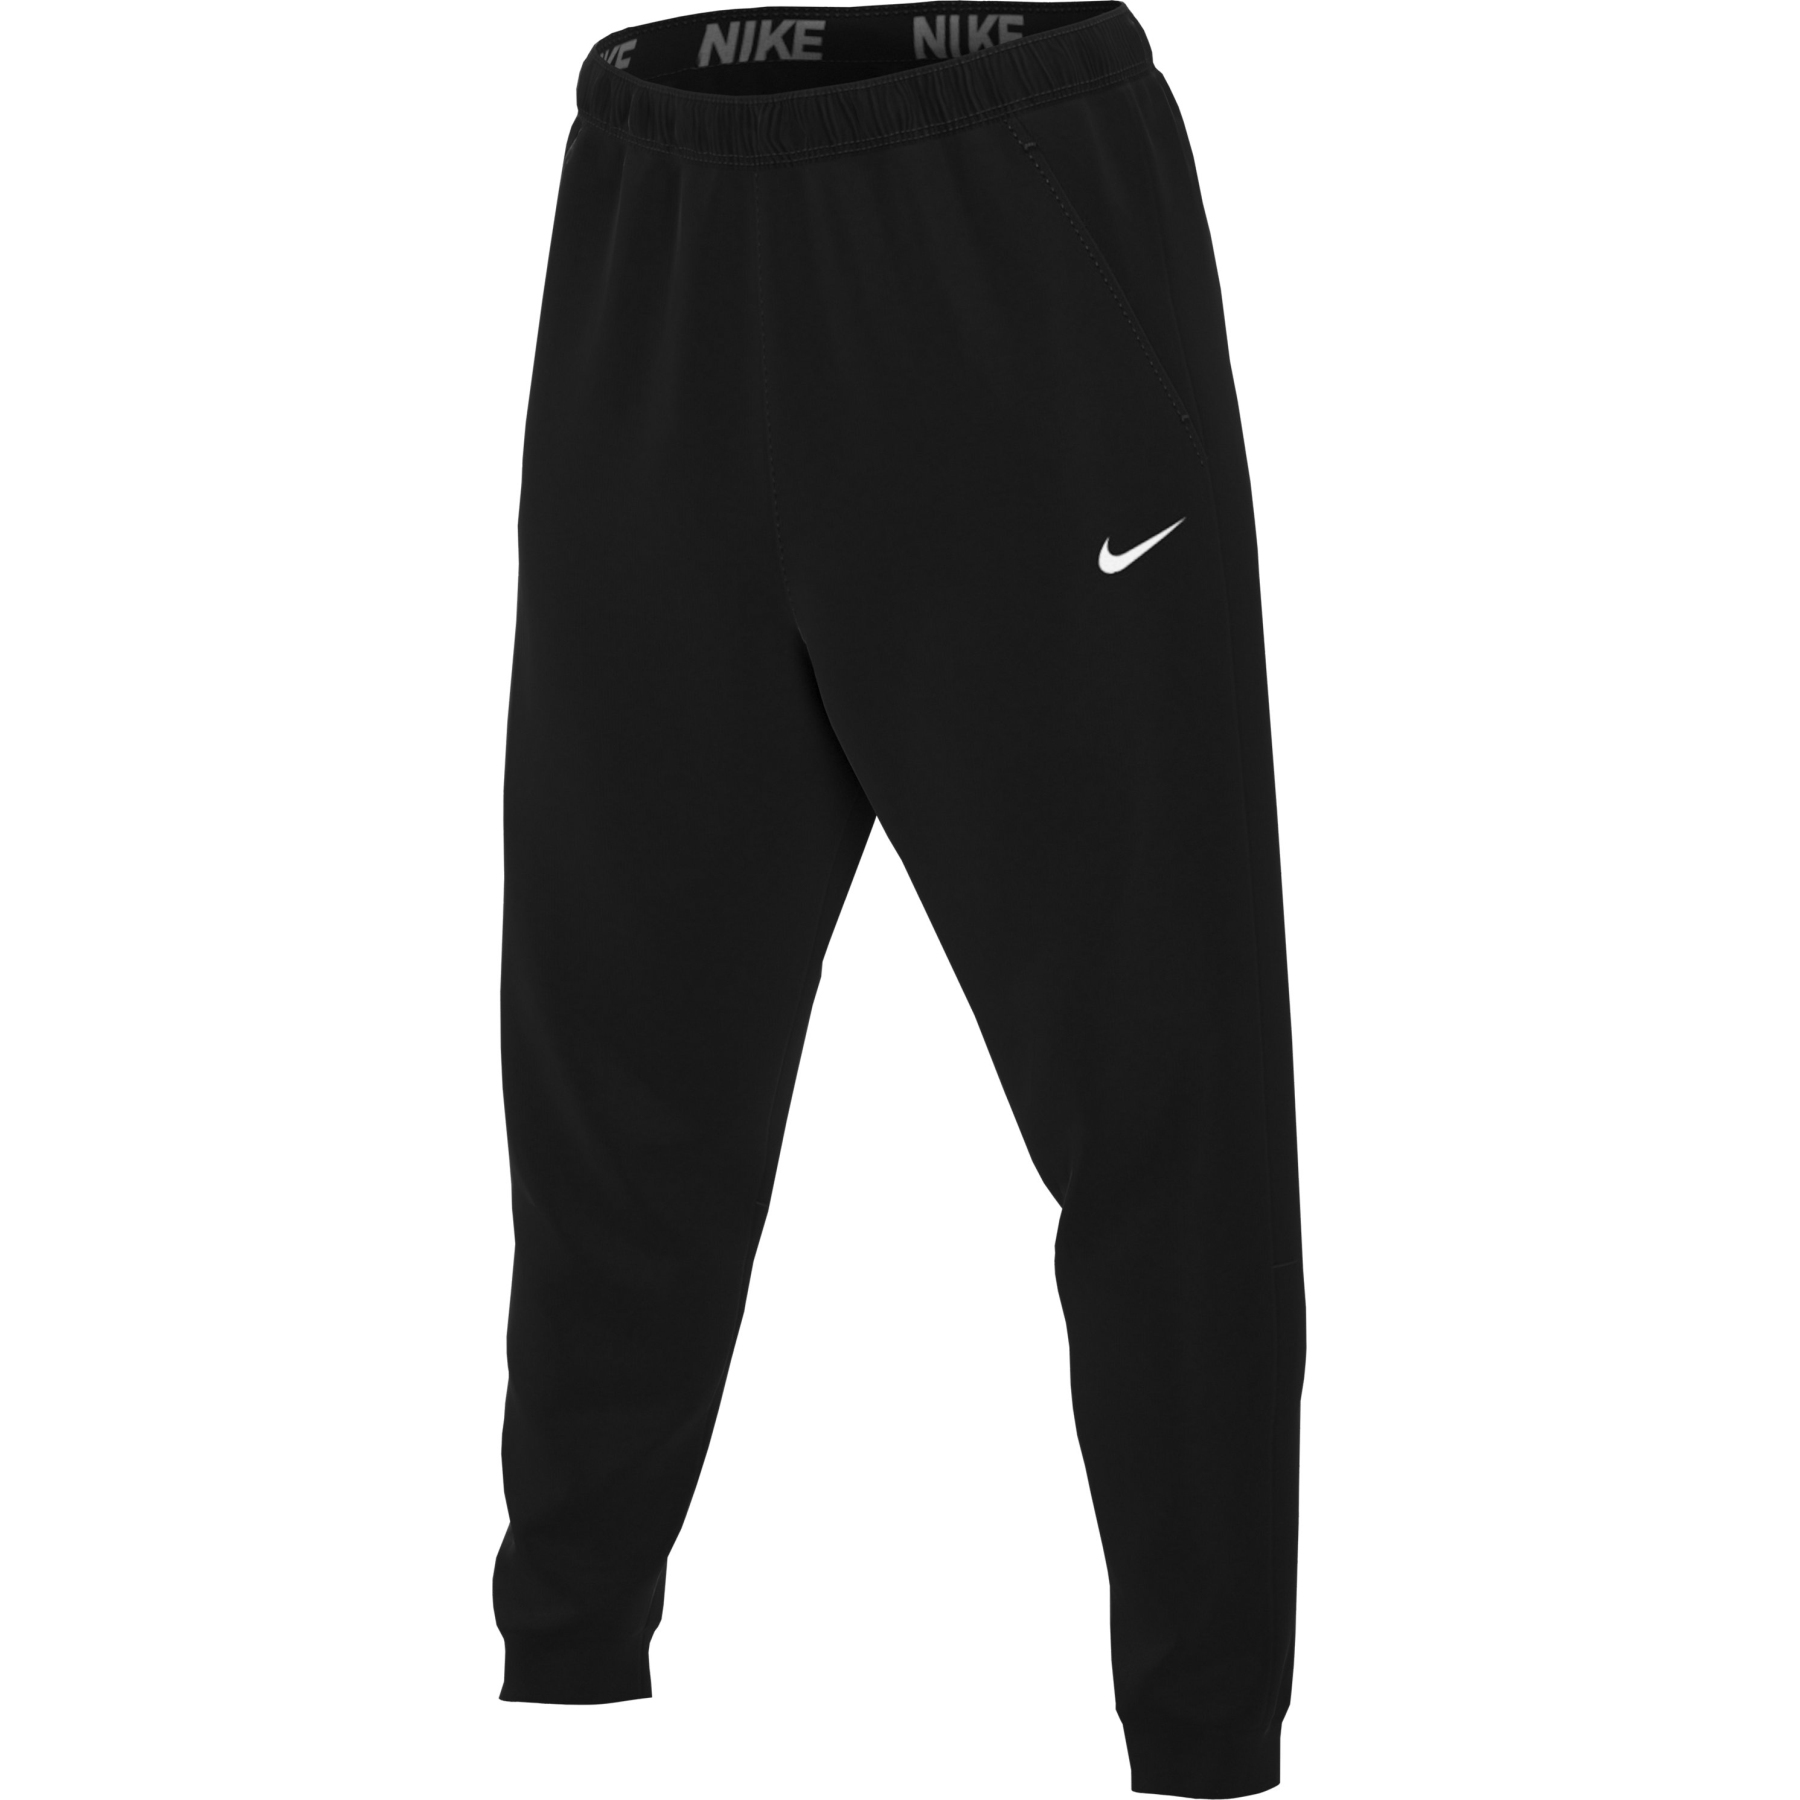 Produktbild von Nike Dry Tapered Herren Trainingshose - schwarz/weiss CZ6379-010